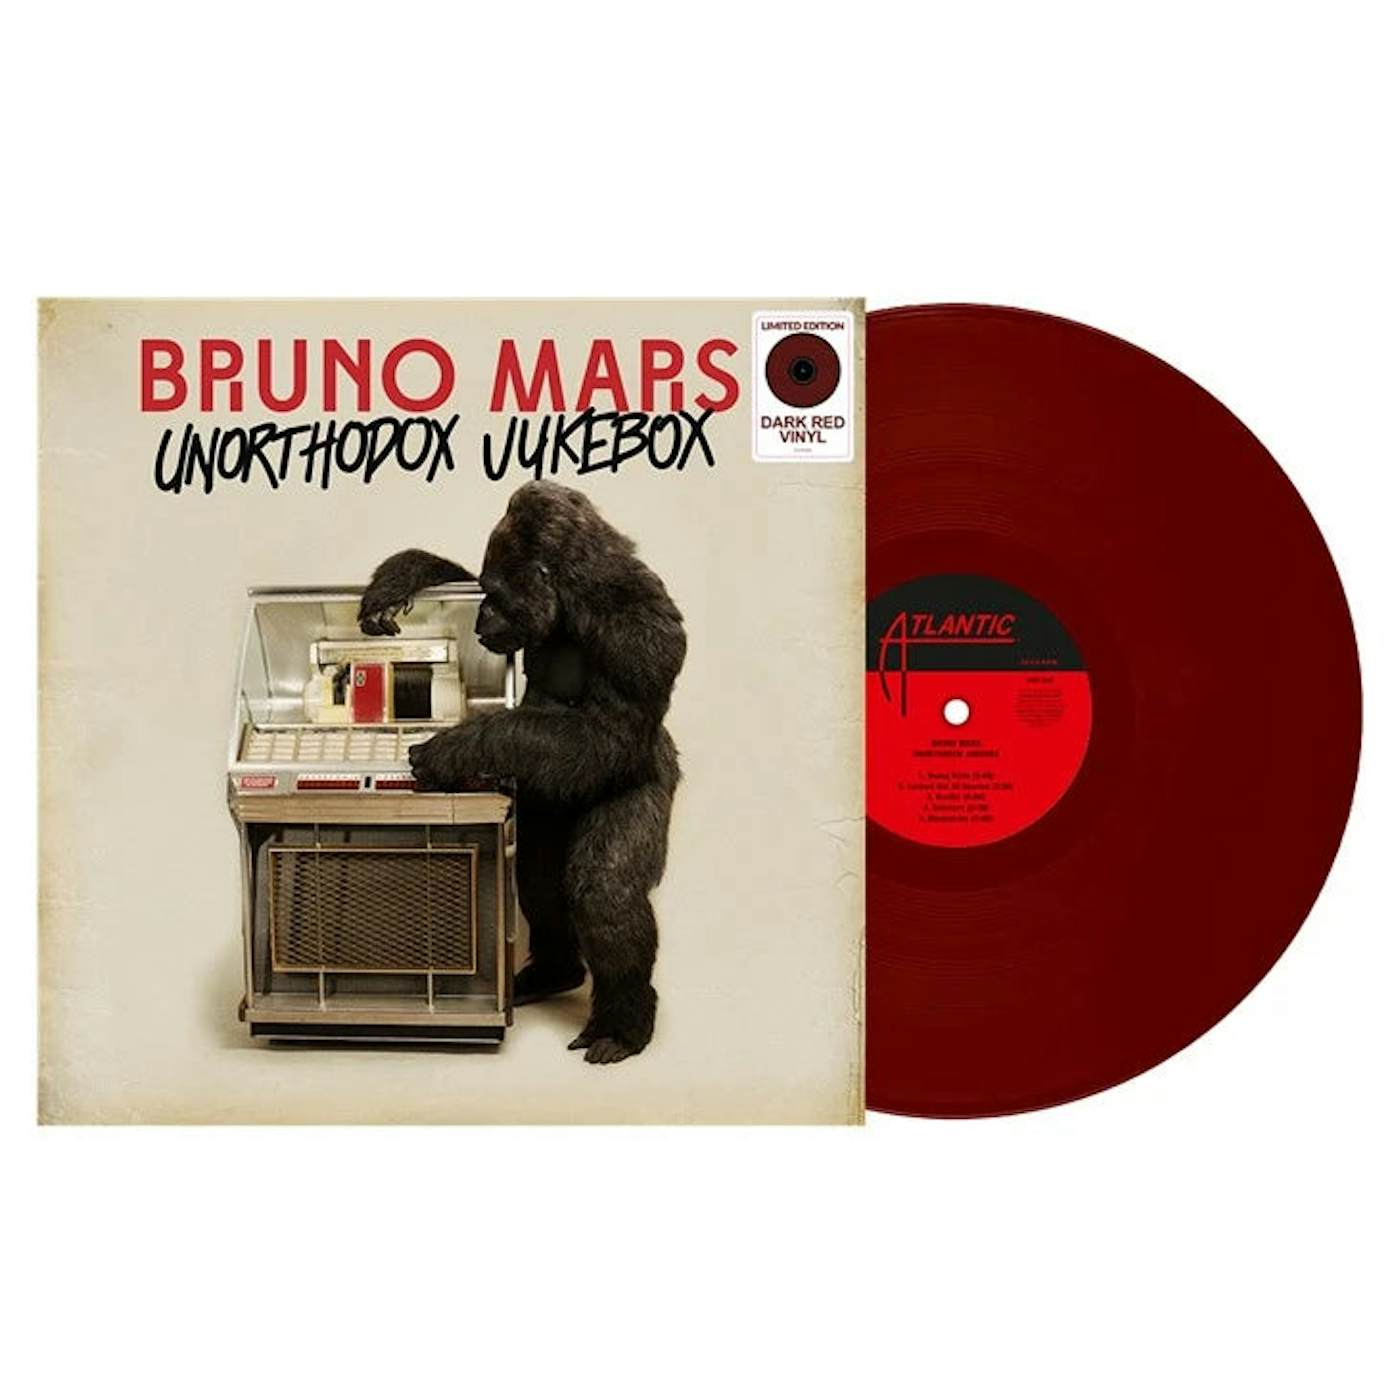 Bruno Mars - Unorthodox Jukebox - 10 ára afmælisútgáfa - Red